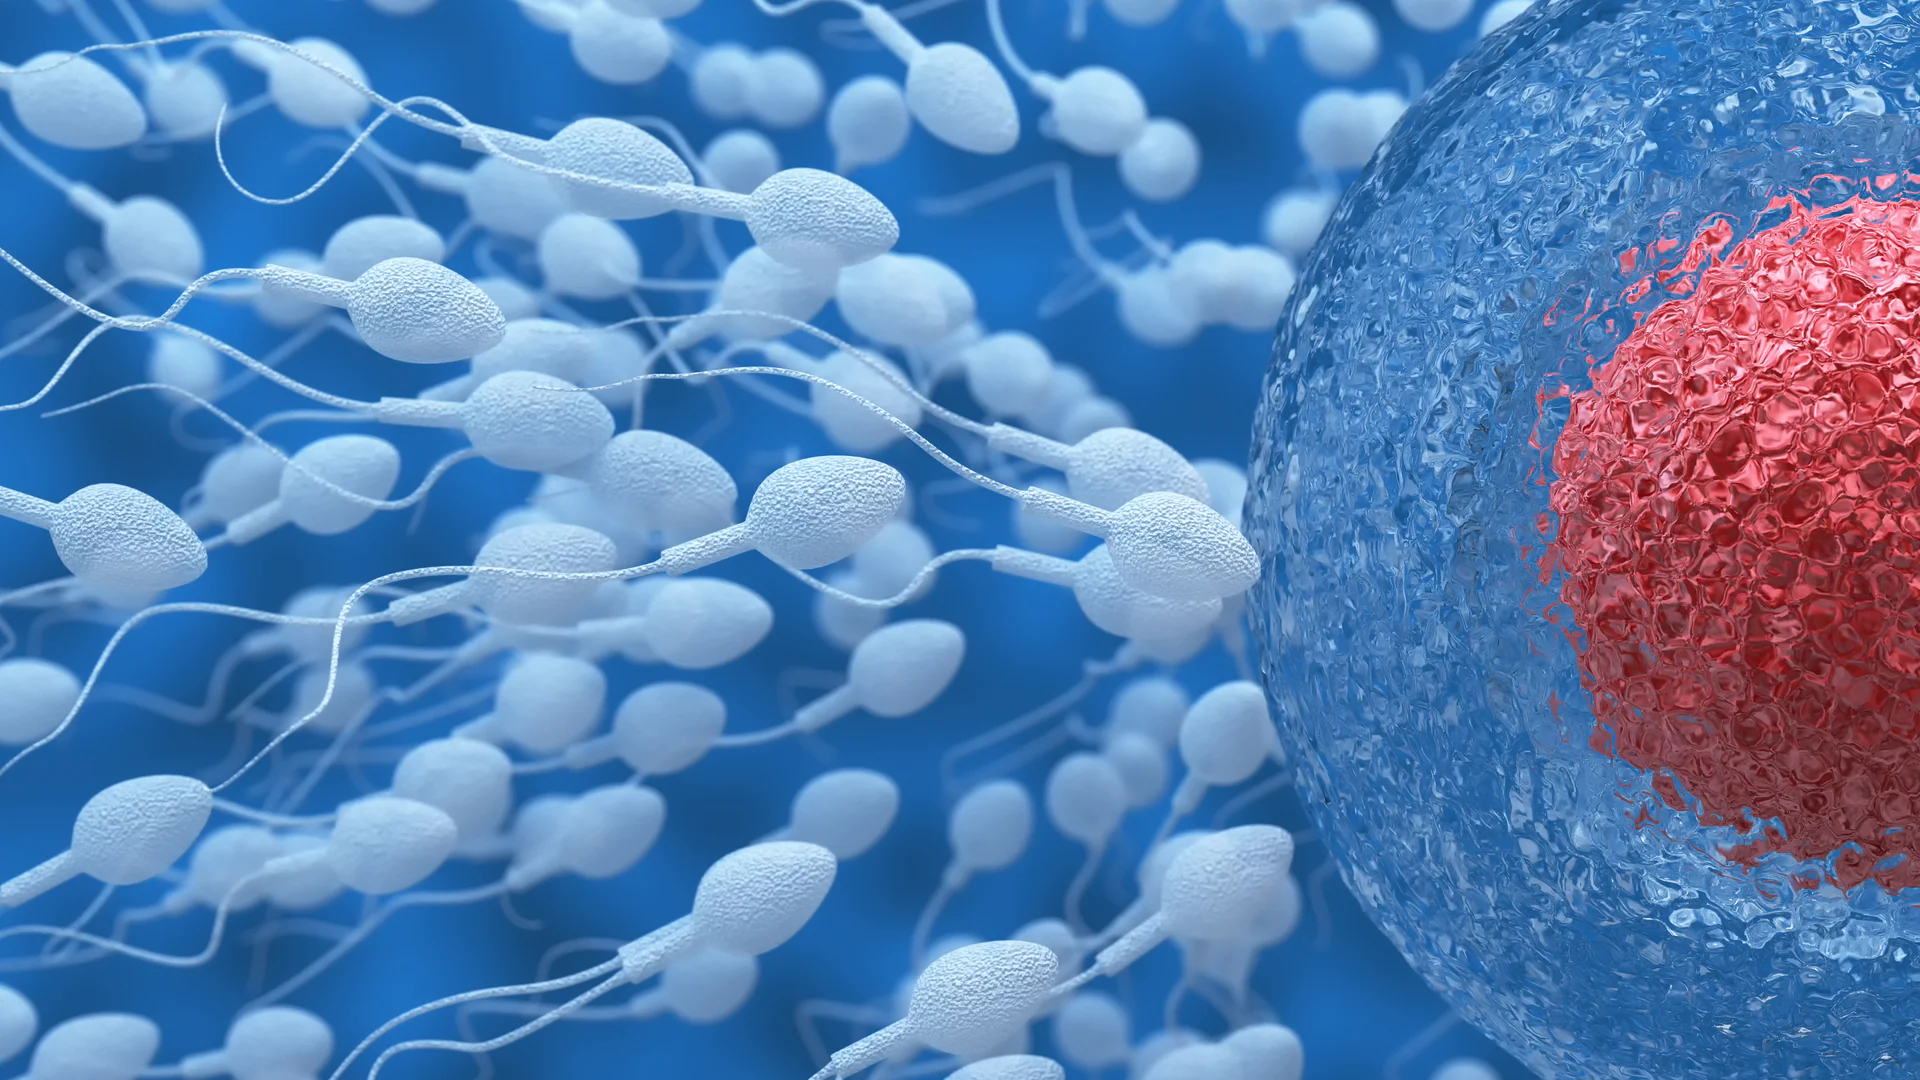 Uno studio accerta che è dimezzato il numero degli spermatozoi negli ultimi 40 anni: ma i motivi restano sconosciuti